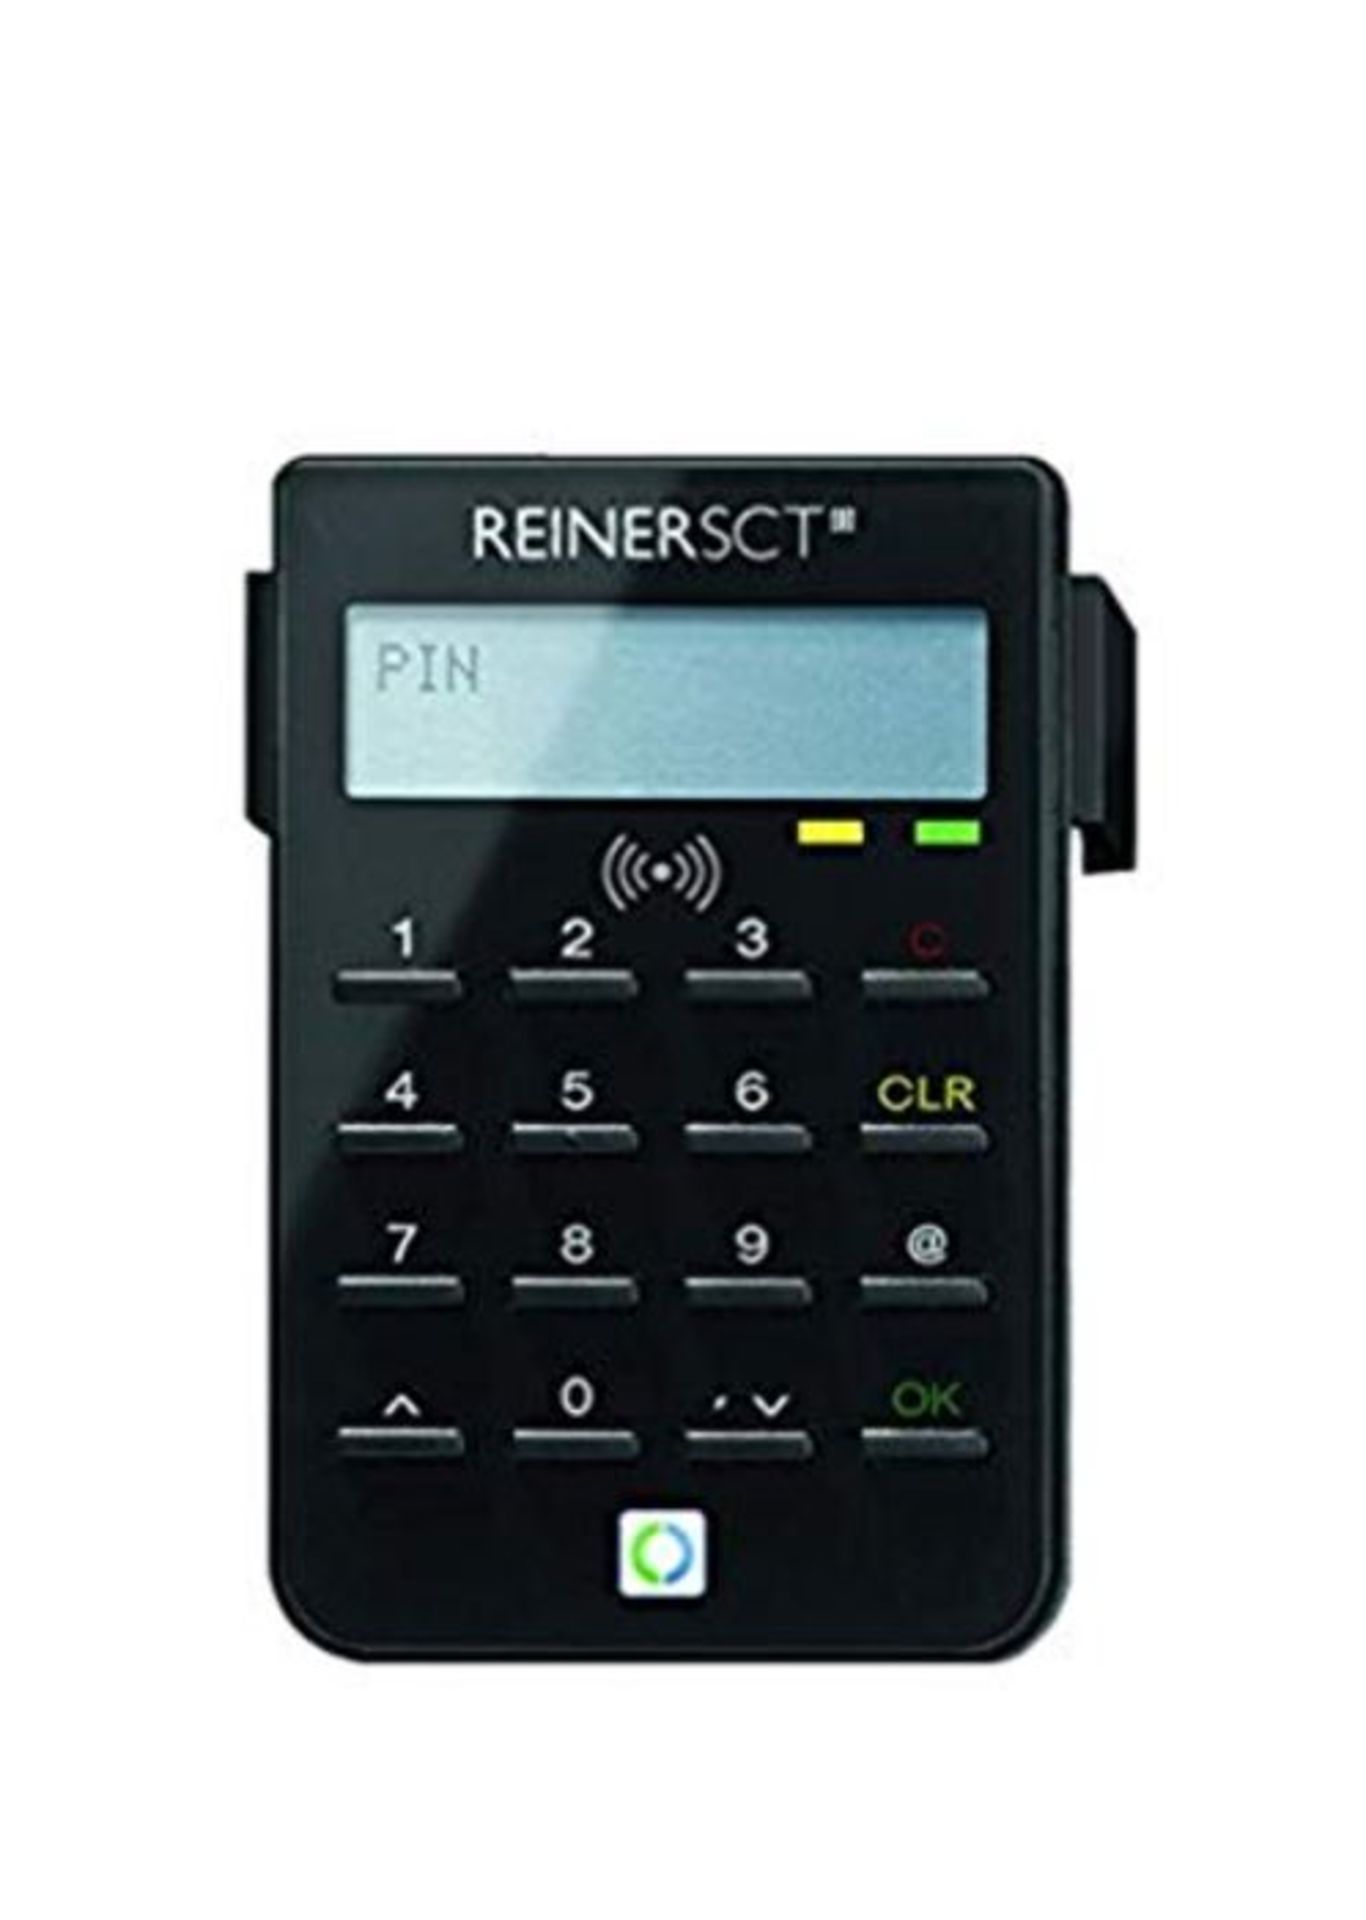 RRP £65.00 REINER SCT cyberJack RFID Chip-Kartenlesegerät standard | Generator für Online-Banki